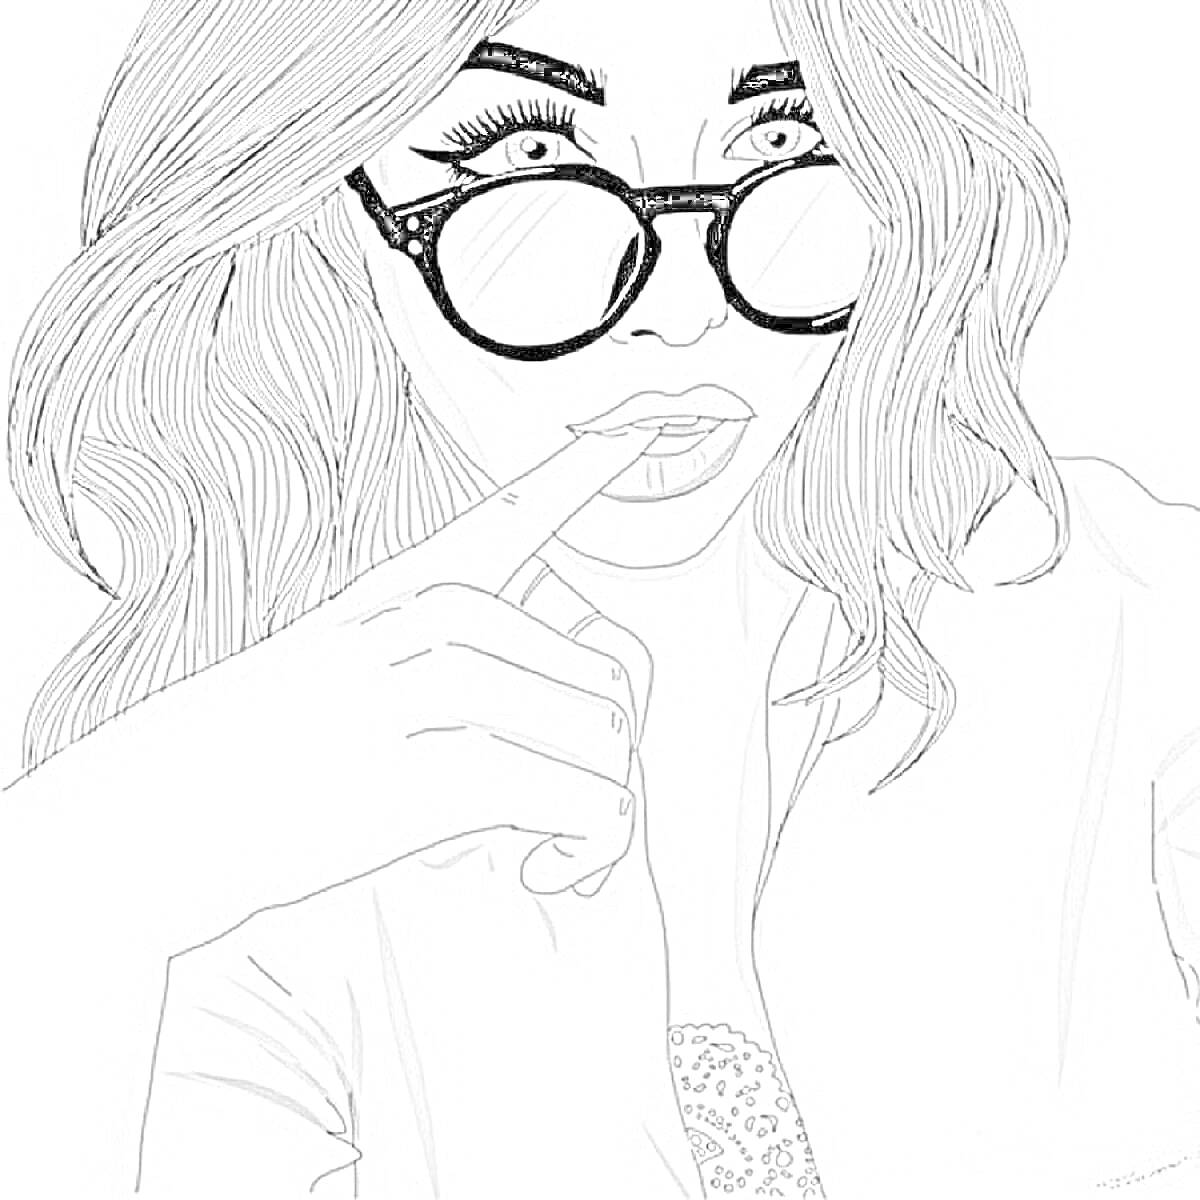 Раскраска Девушка с длинными волосами, в очках и с рукой у лица